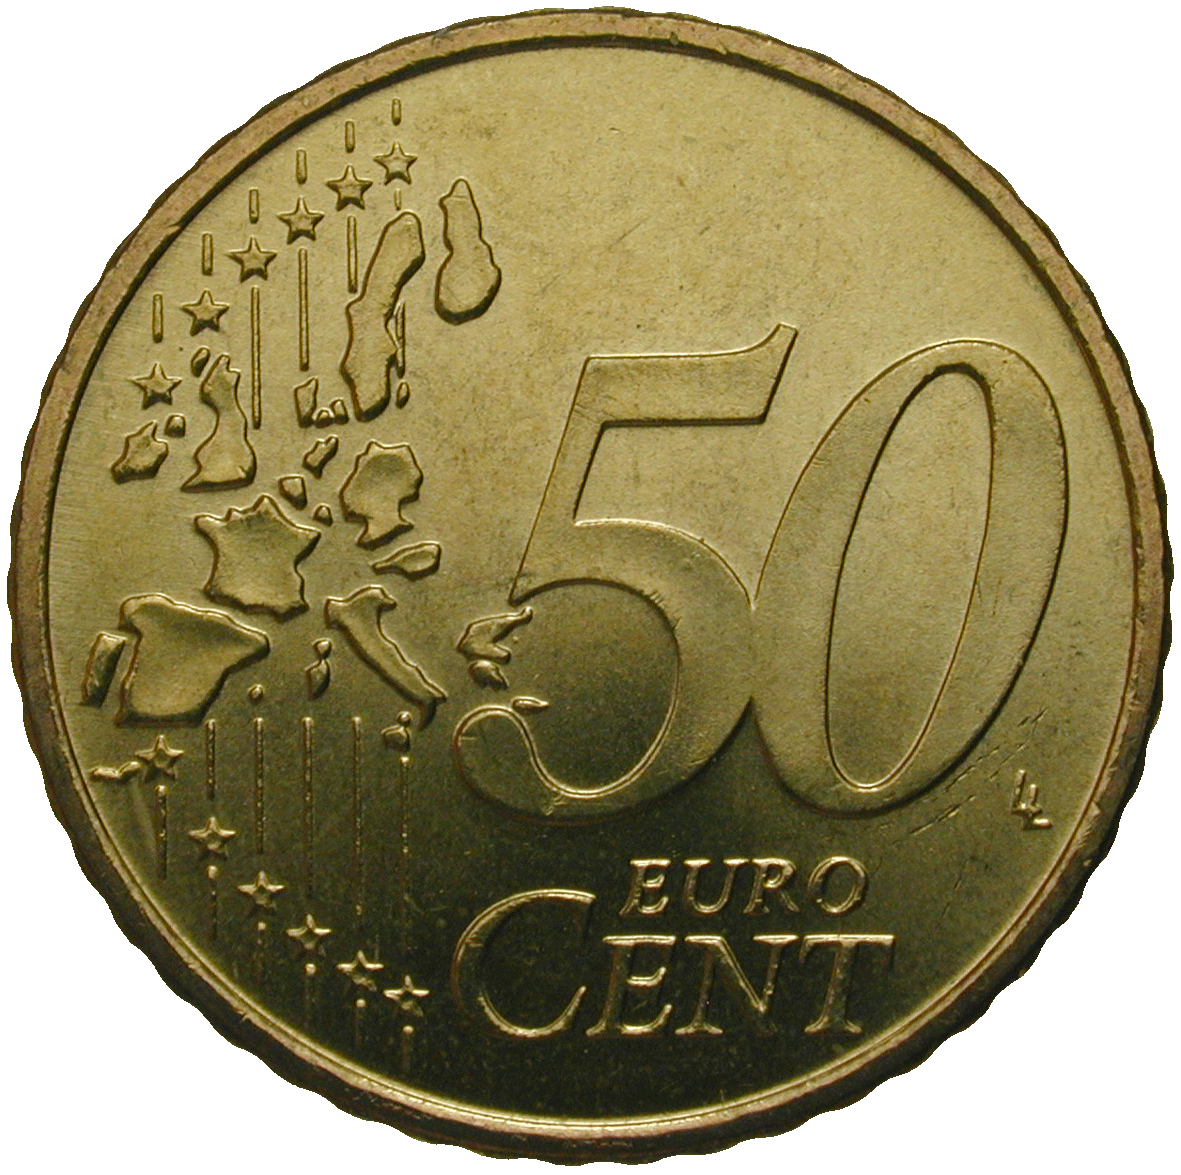 Republik Griechenland, 50 Eurocent 2002 (reverse)